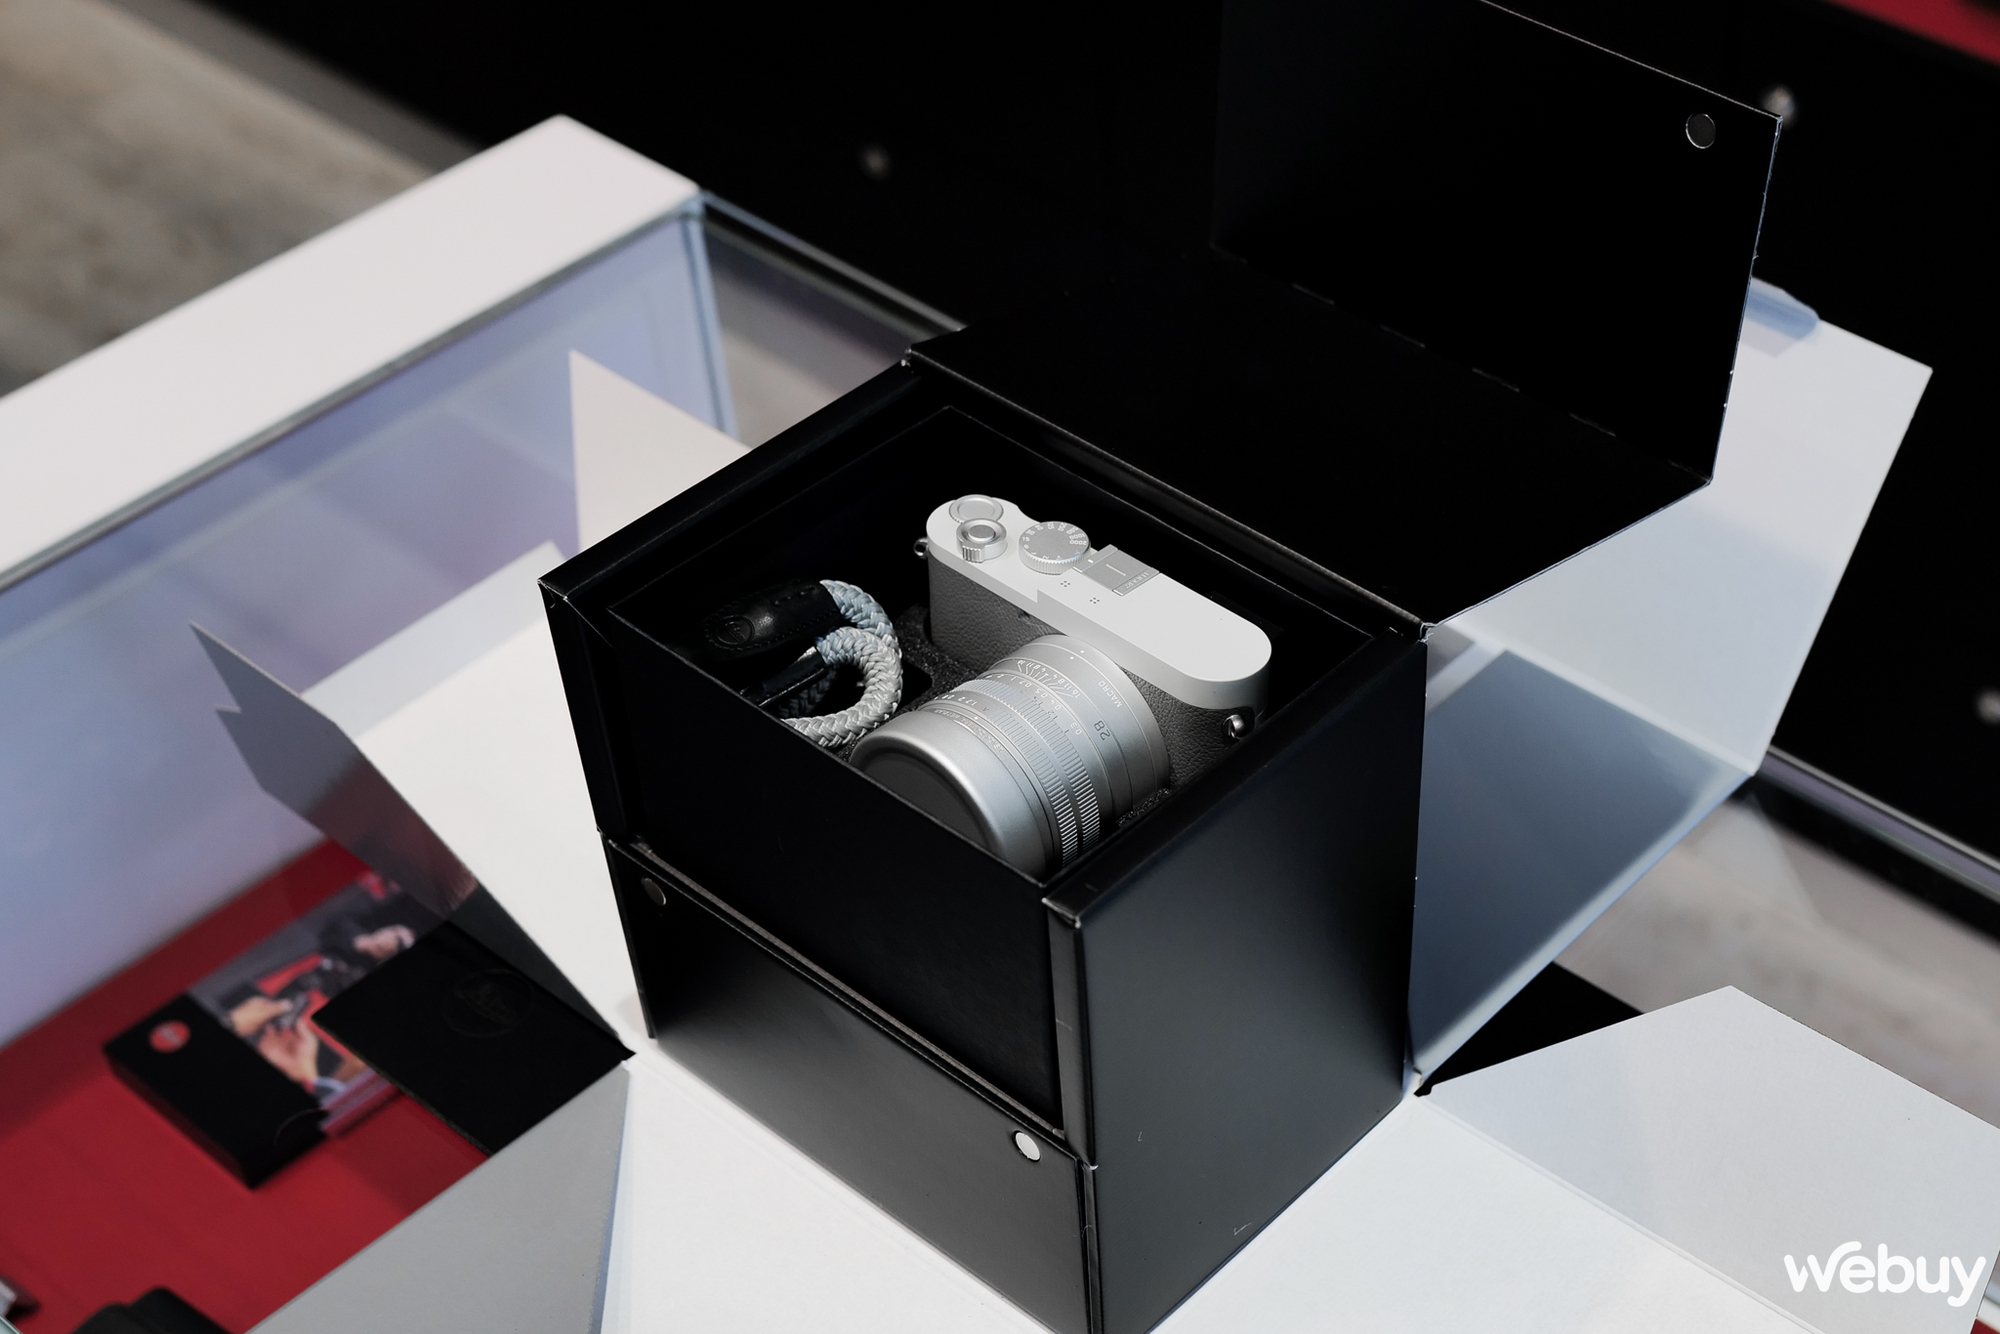 Mở hộp máy ảnh hạng sang Leica Q2 Ghost Edition: Màu xám xi măng, lấy ý tưởng từ đồng hồ Rolex hiếm - Ảnh 3.